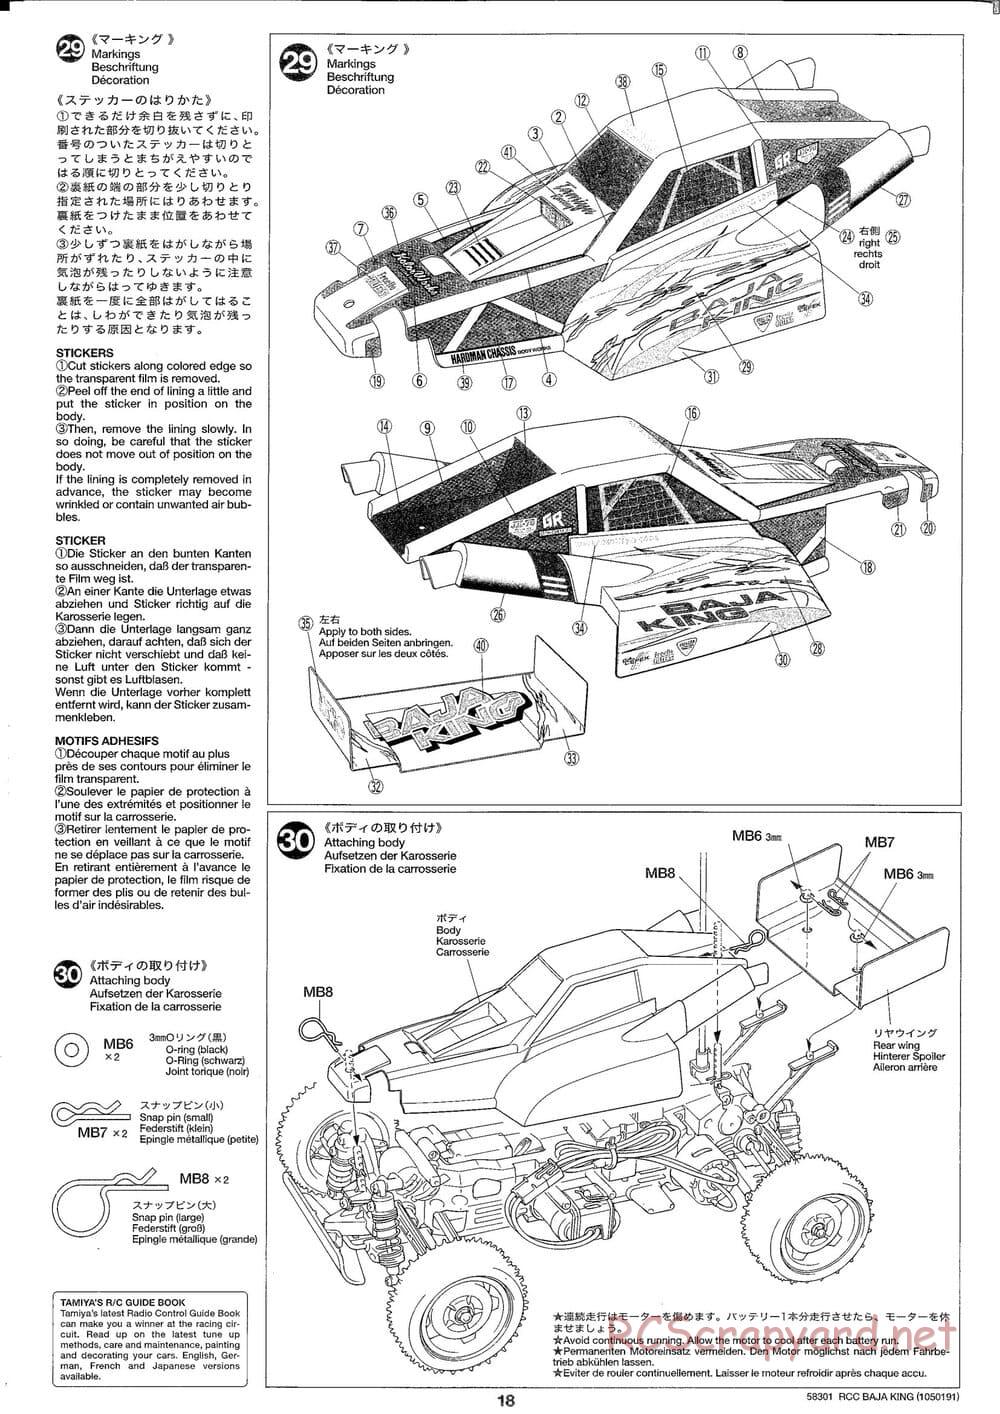 Tamiya - Baja King - TL-01B Chassis - Manual - Page 18